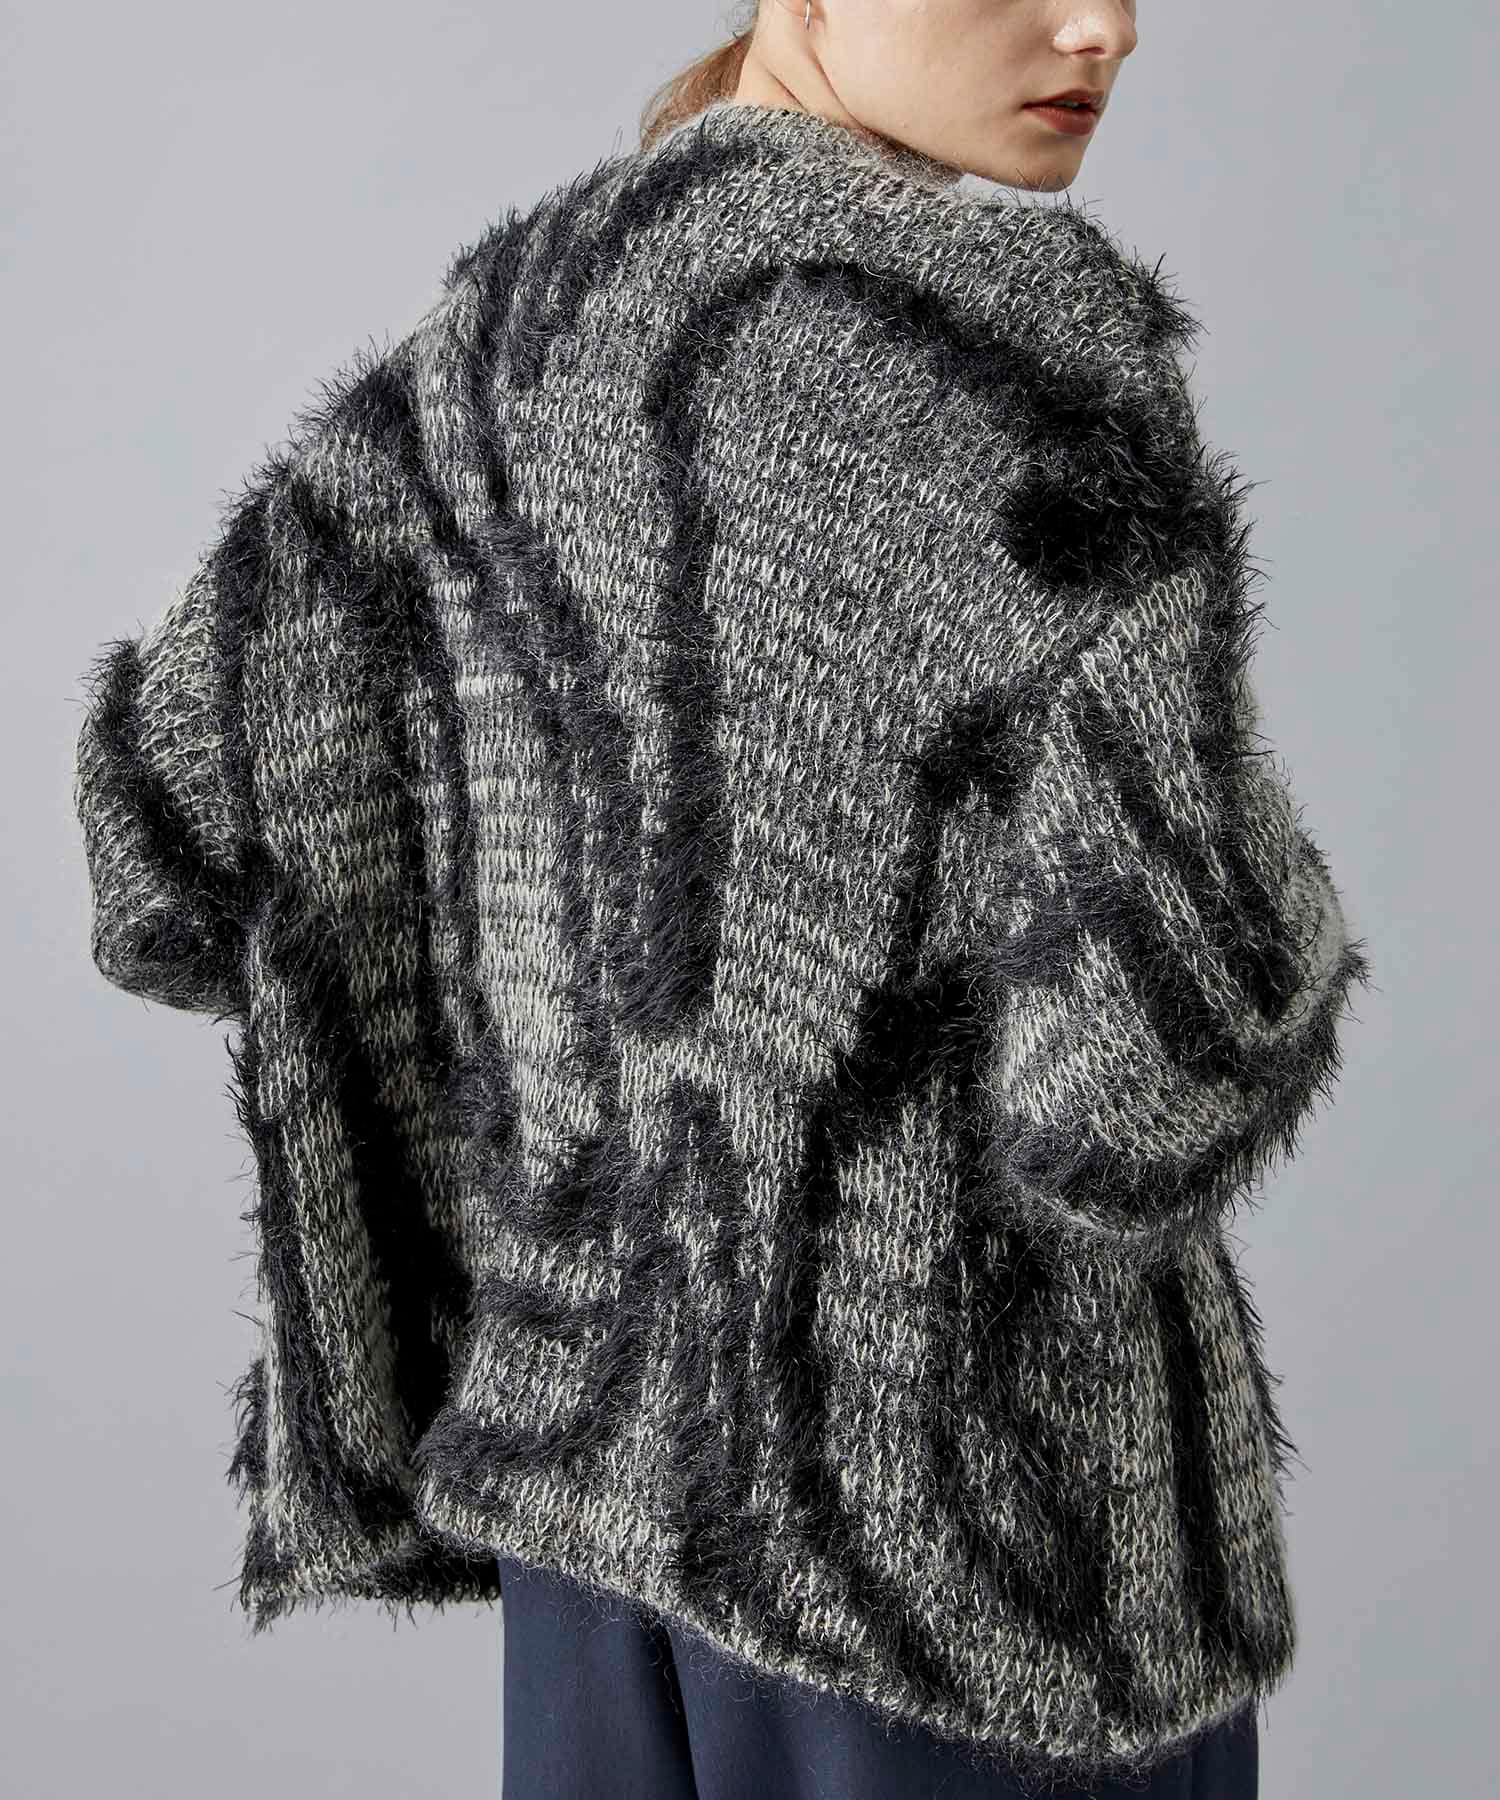 〈別注〉Fur Jaquard Knit Cardigan EBONY